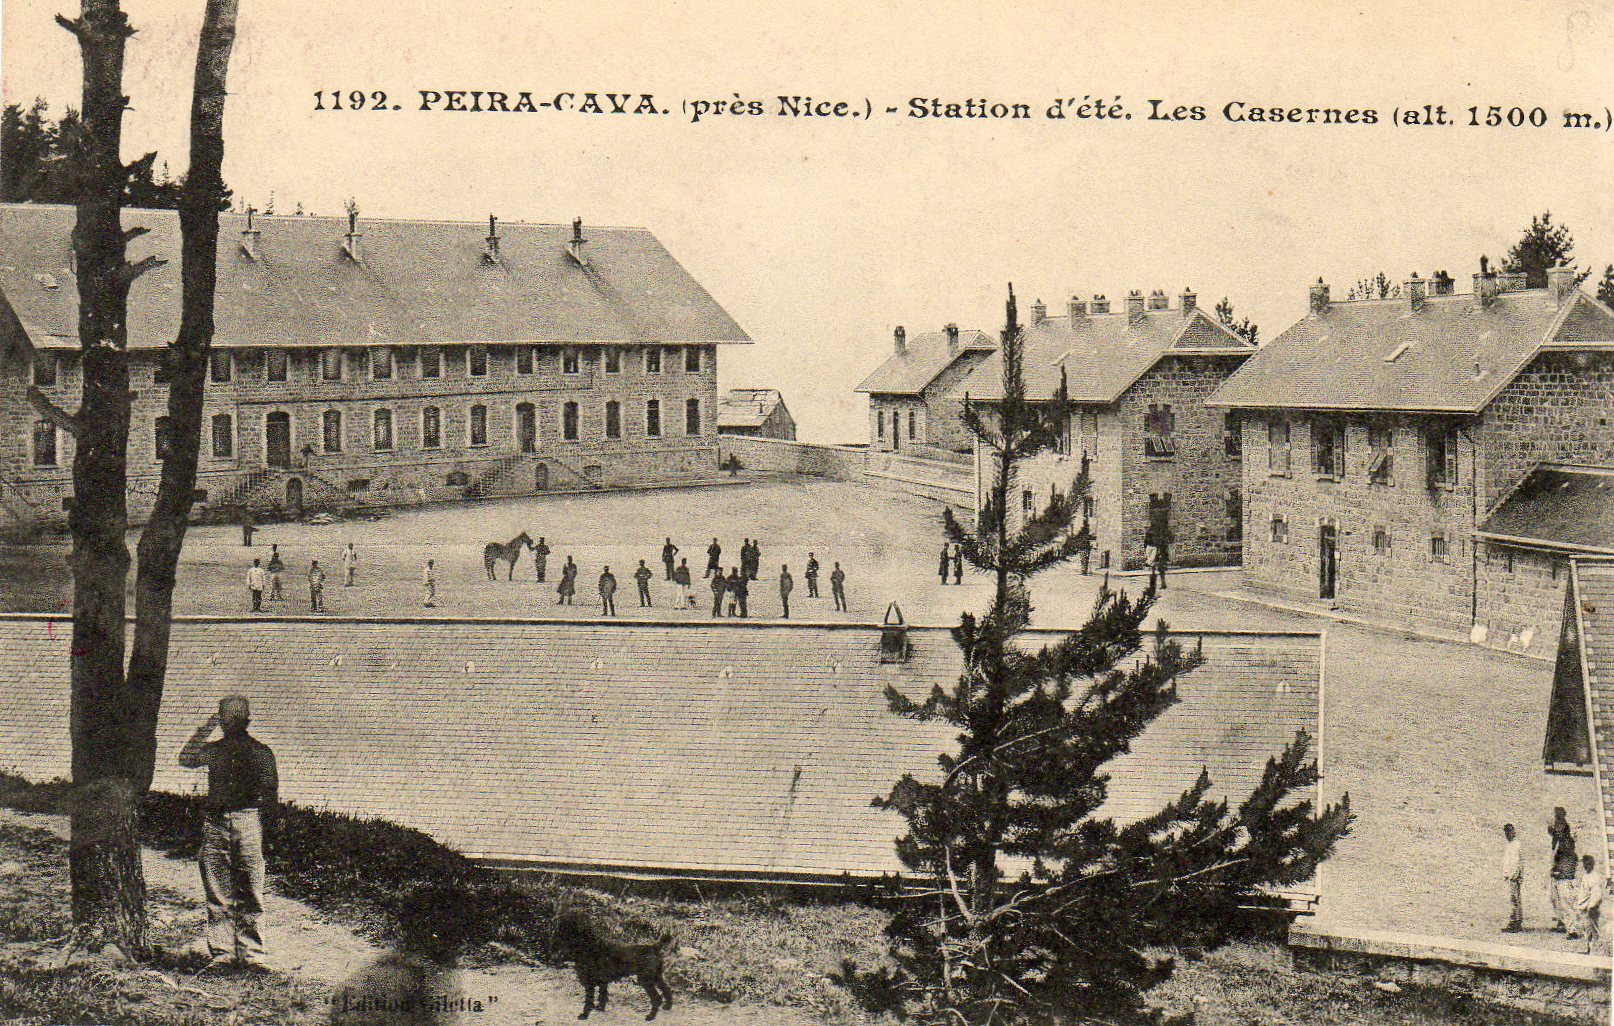 Ligne Maginot - PEIRA CAVA - CASERNE CRENANT - (Cité Cadres) - Carte postale non datée, après 1935